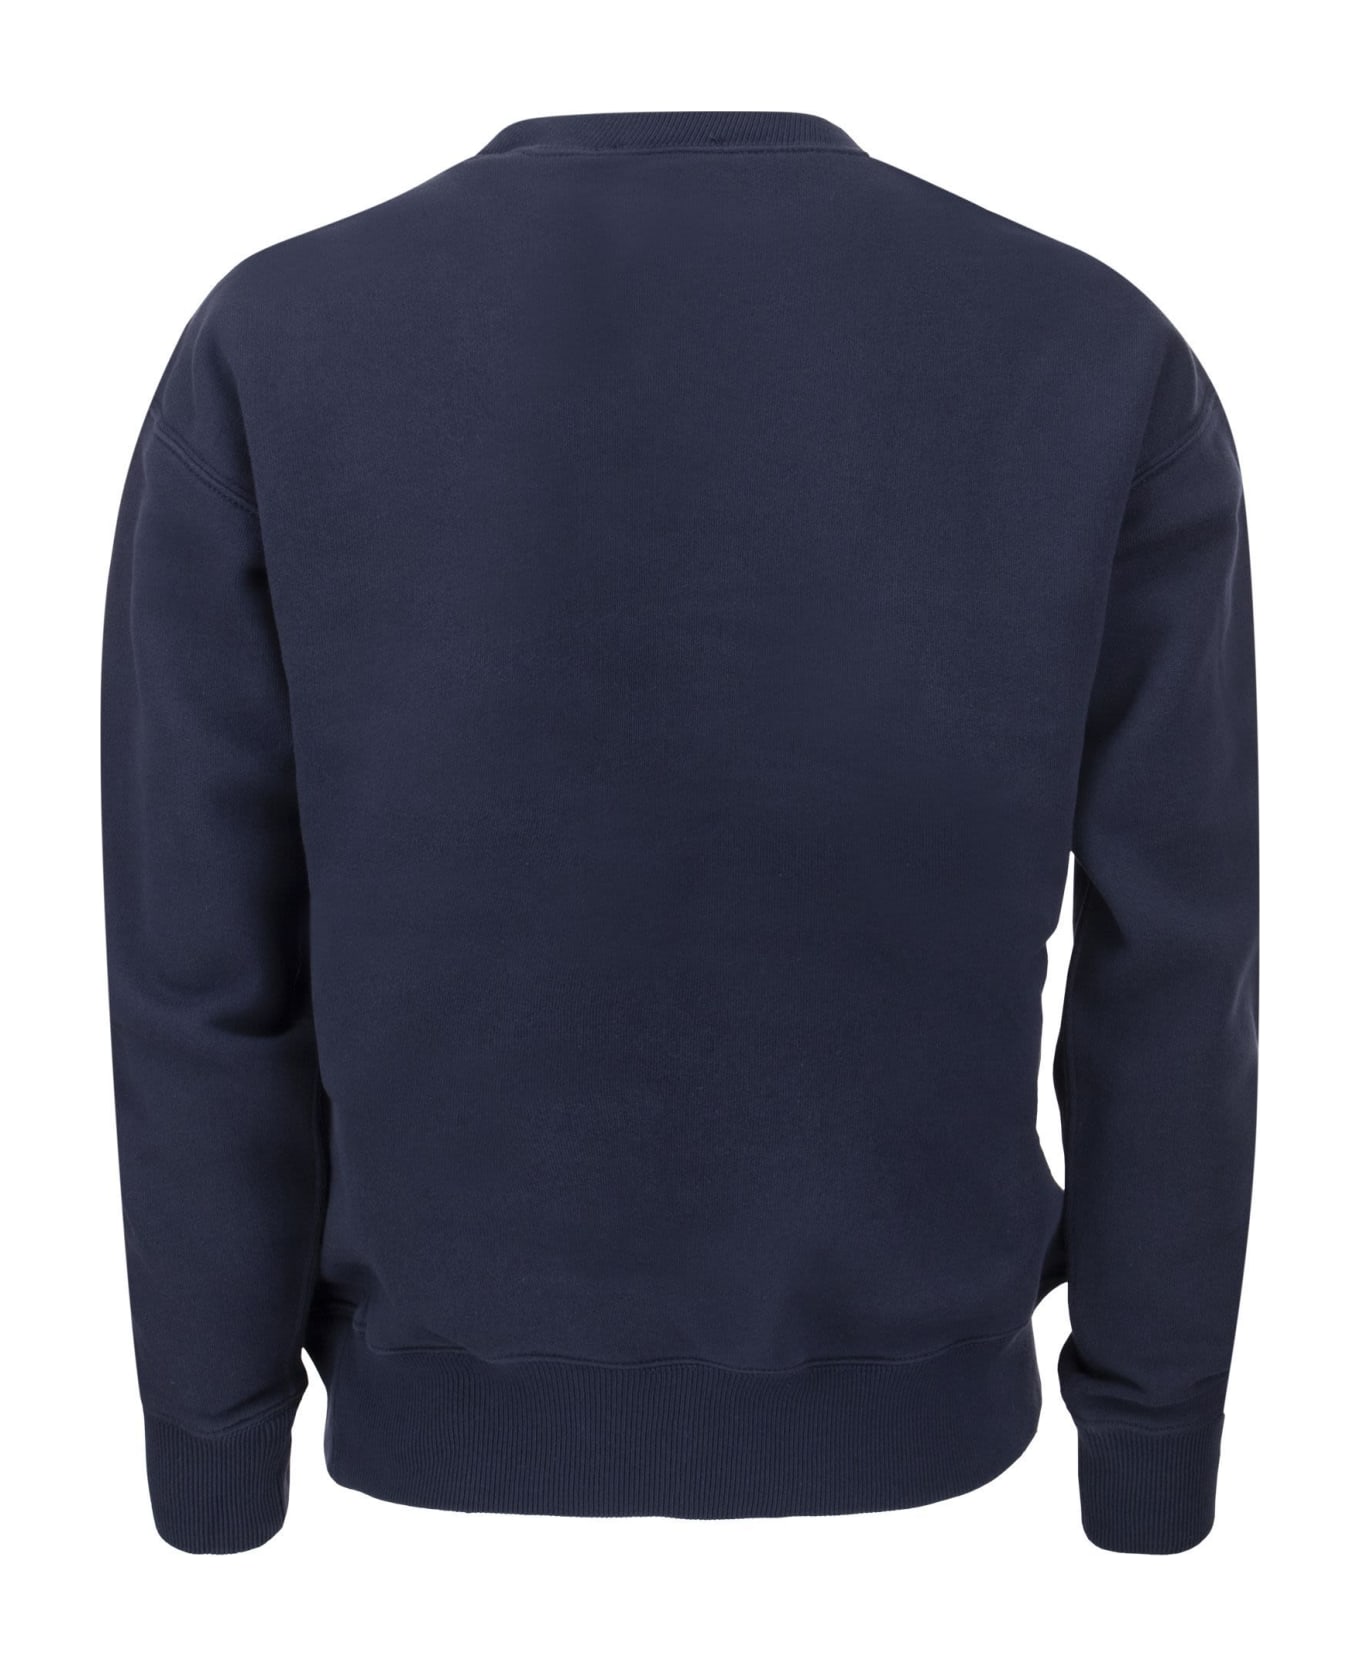 Ralph Lauren Sweatshirt With Pony - Navy Blue